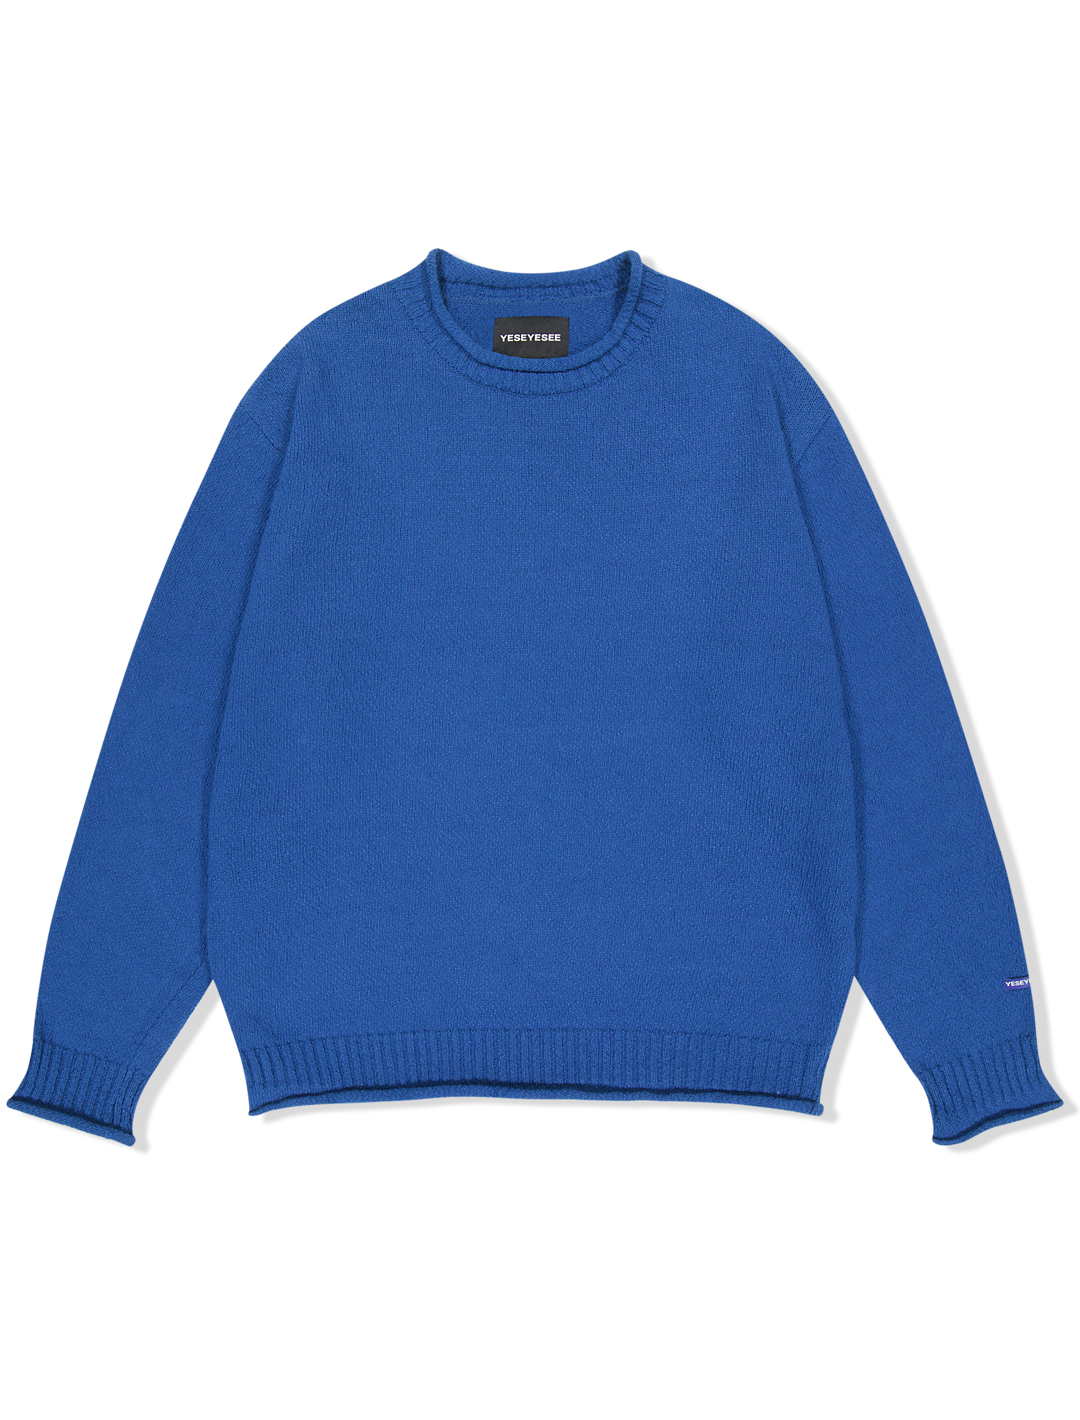 Y.E.S Fisherman Sweater Blue